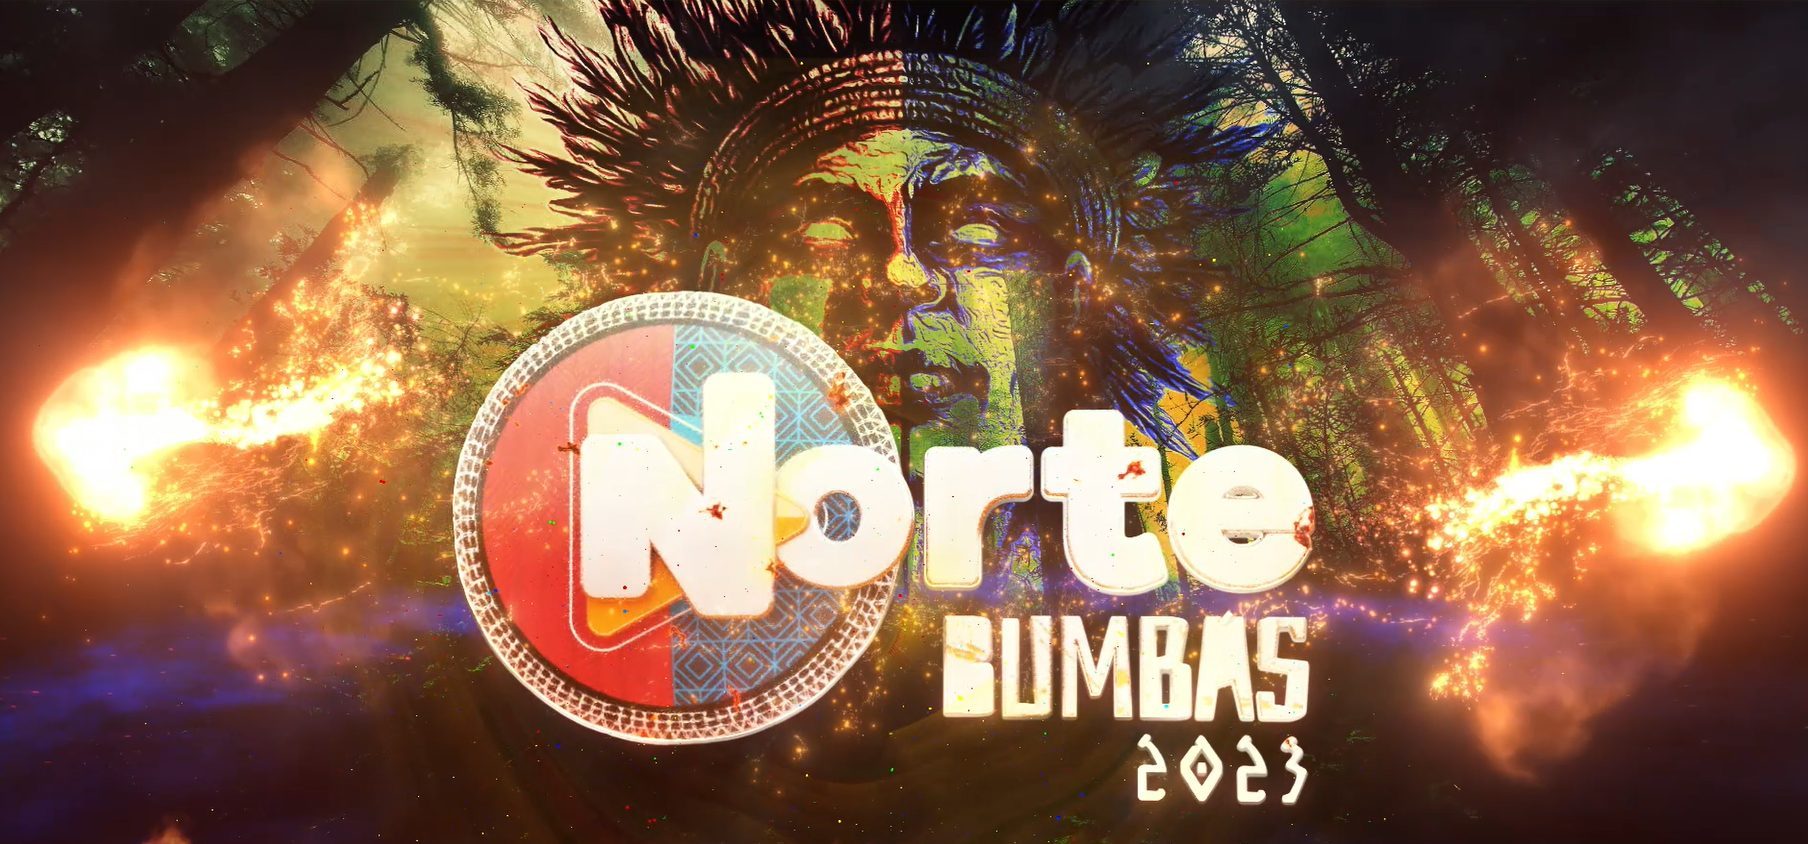 Norte Bumbás 2023 contará mais de 10 atrações e espaço temático com artes indígenas - Foto: TV Norte Amazonas